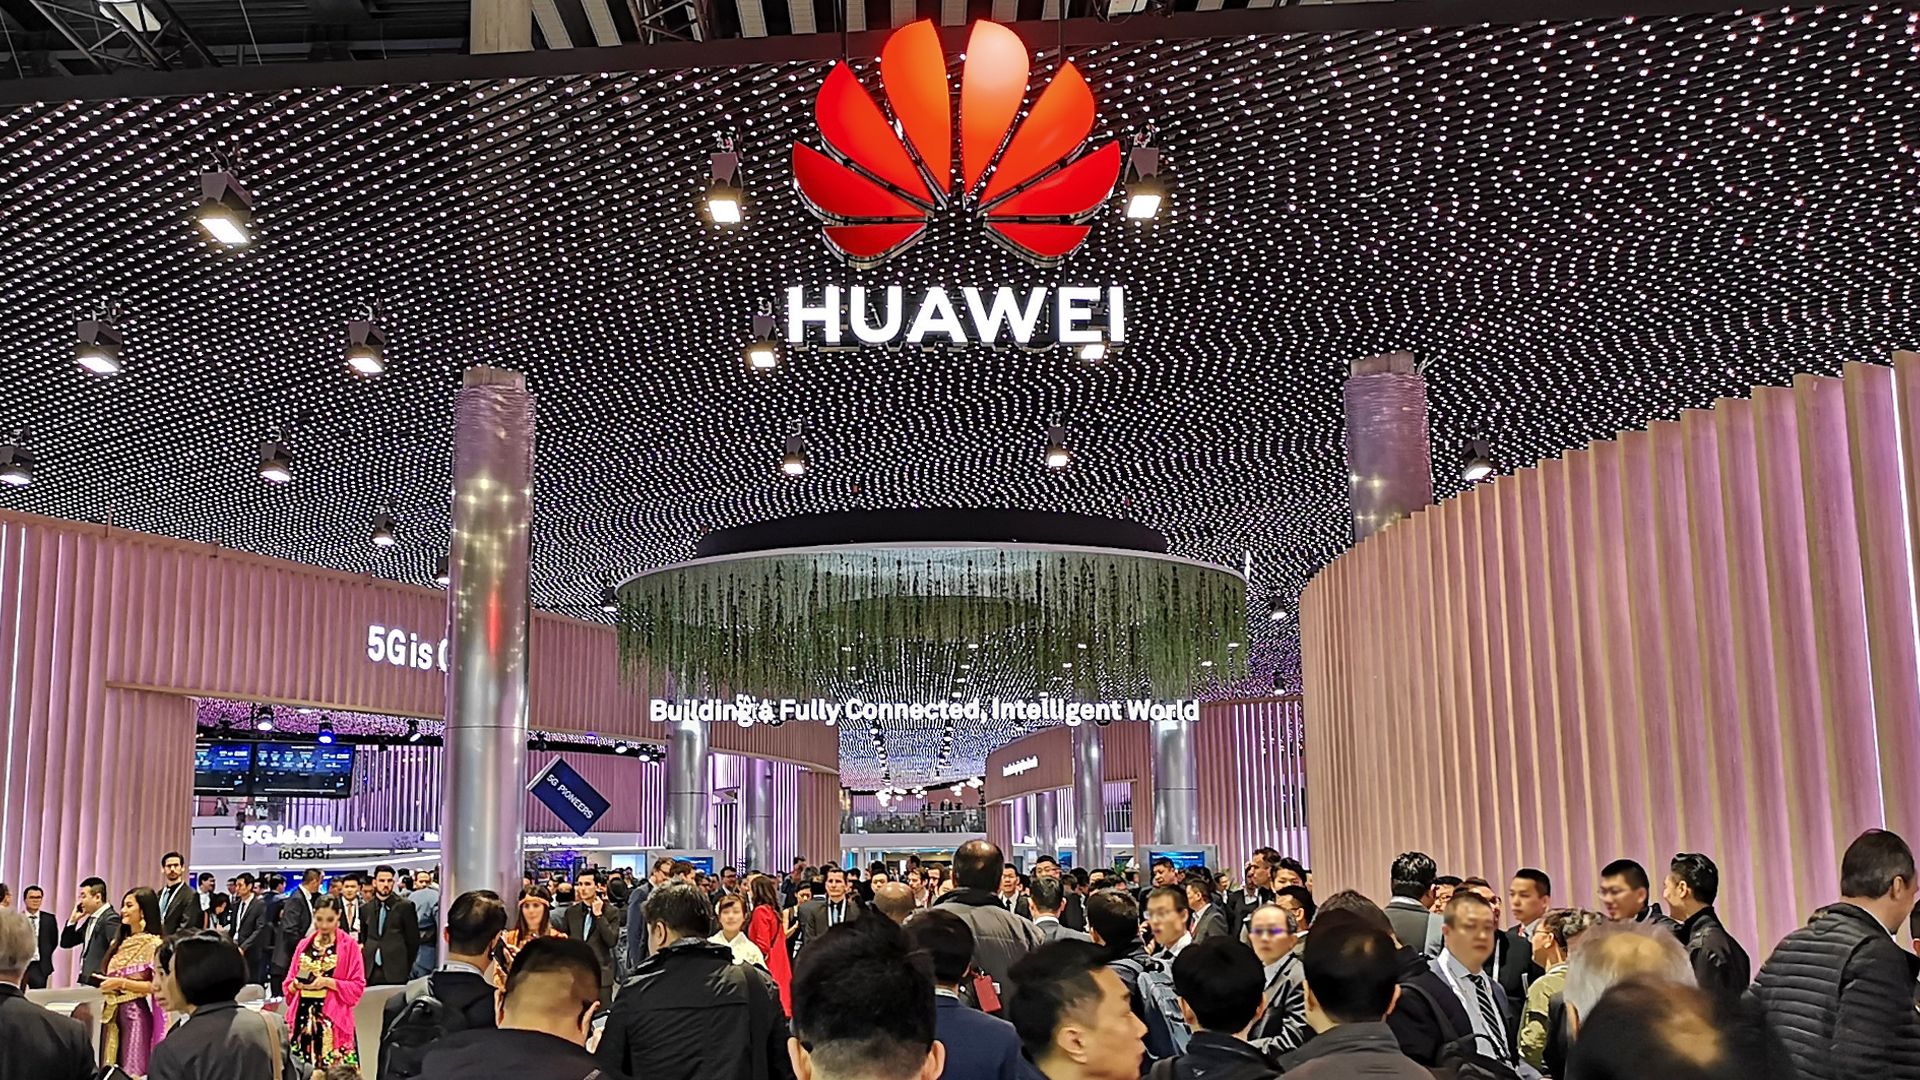 Huawei pagará 8 millones de euros por su stand en el MWC 2019